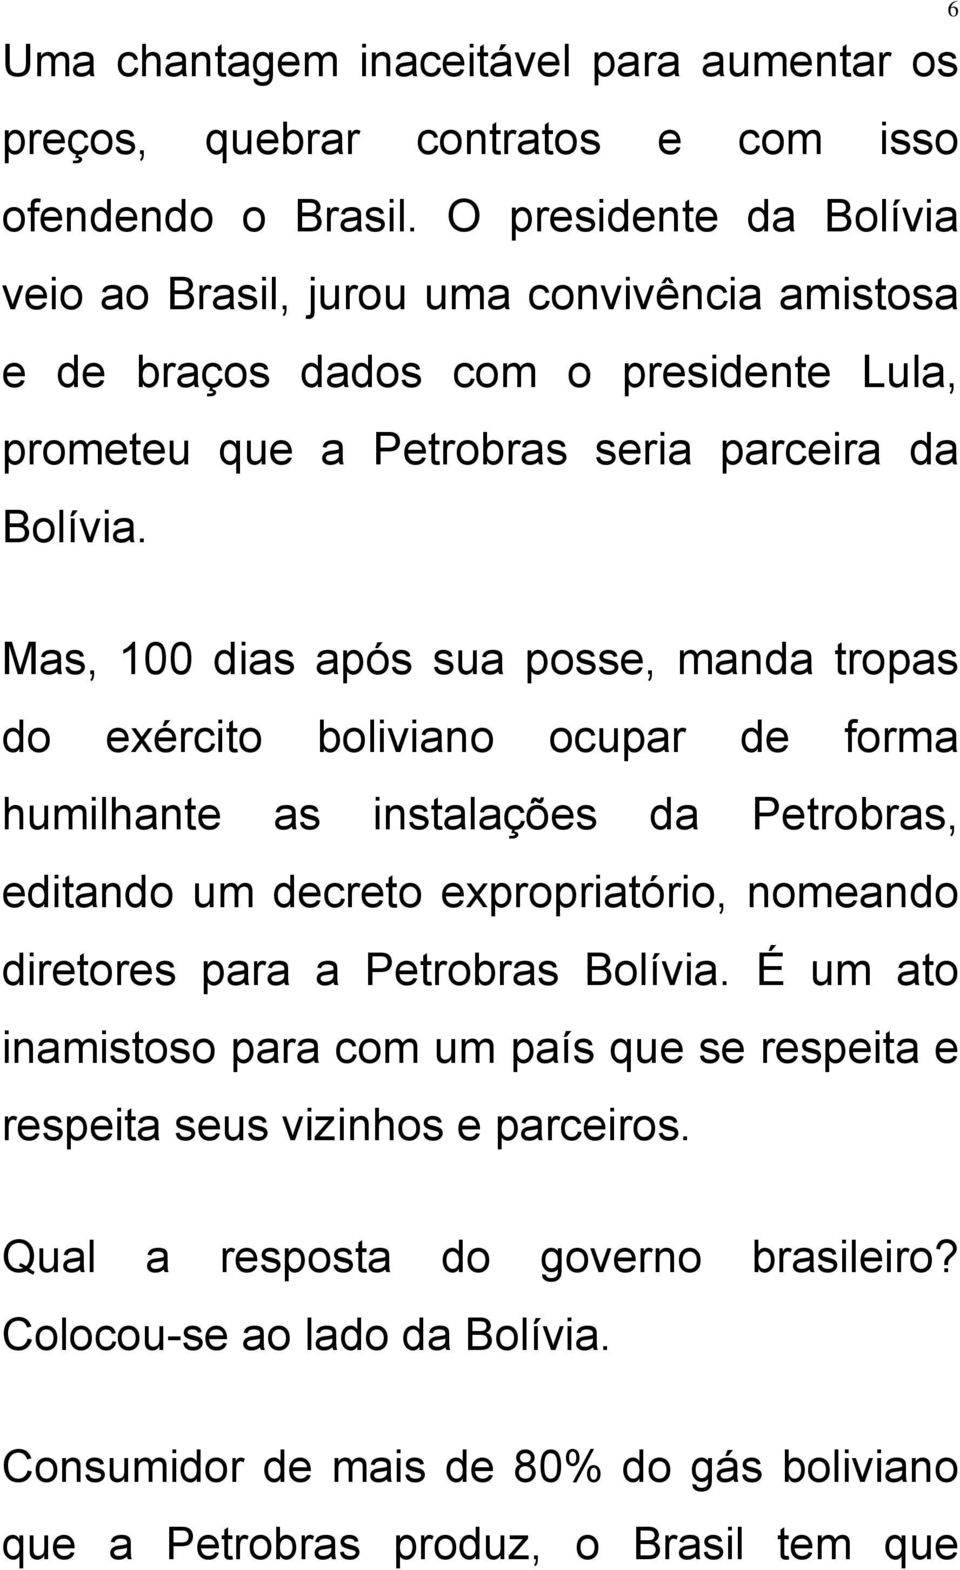 6 Mas, 100 dias após sua posse, manda tropas do exército boliviano ocupar de forma humilhante as instalações da Petrobras, editando um decreto expropriatório, nomeando diretores